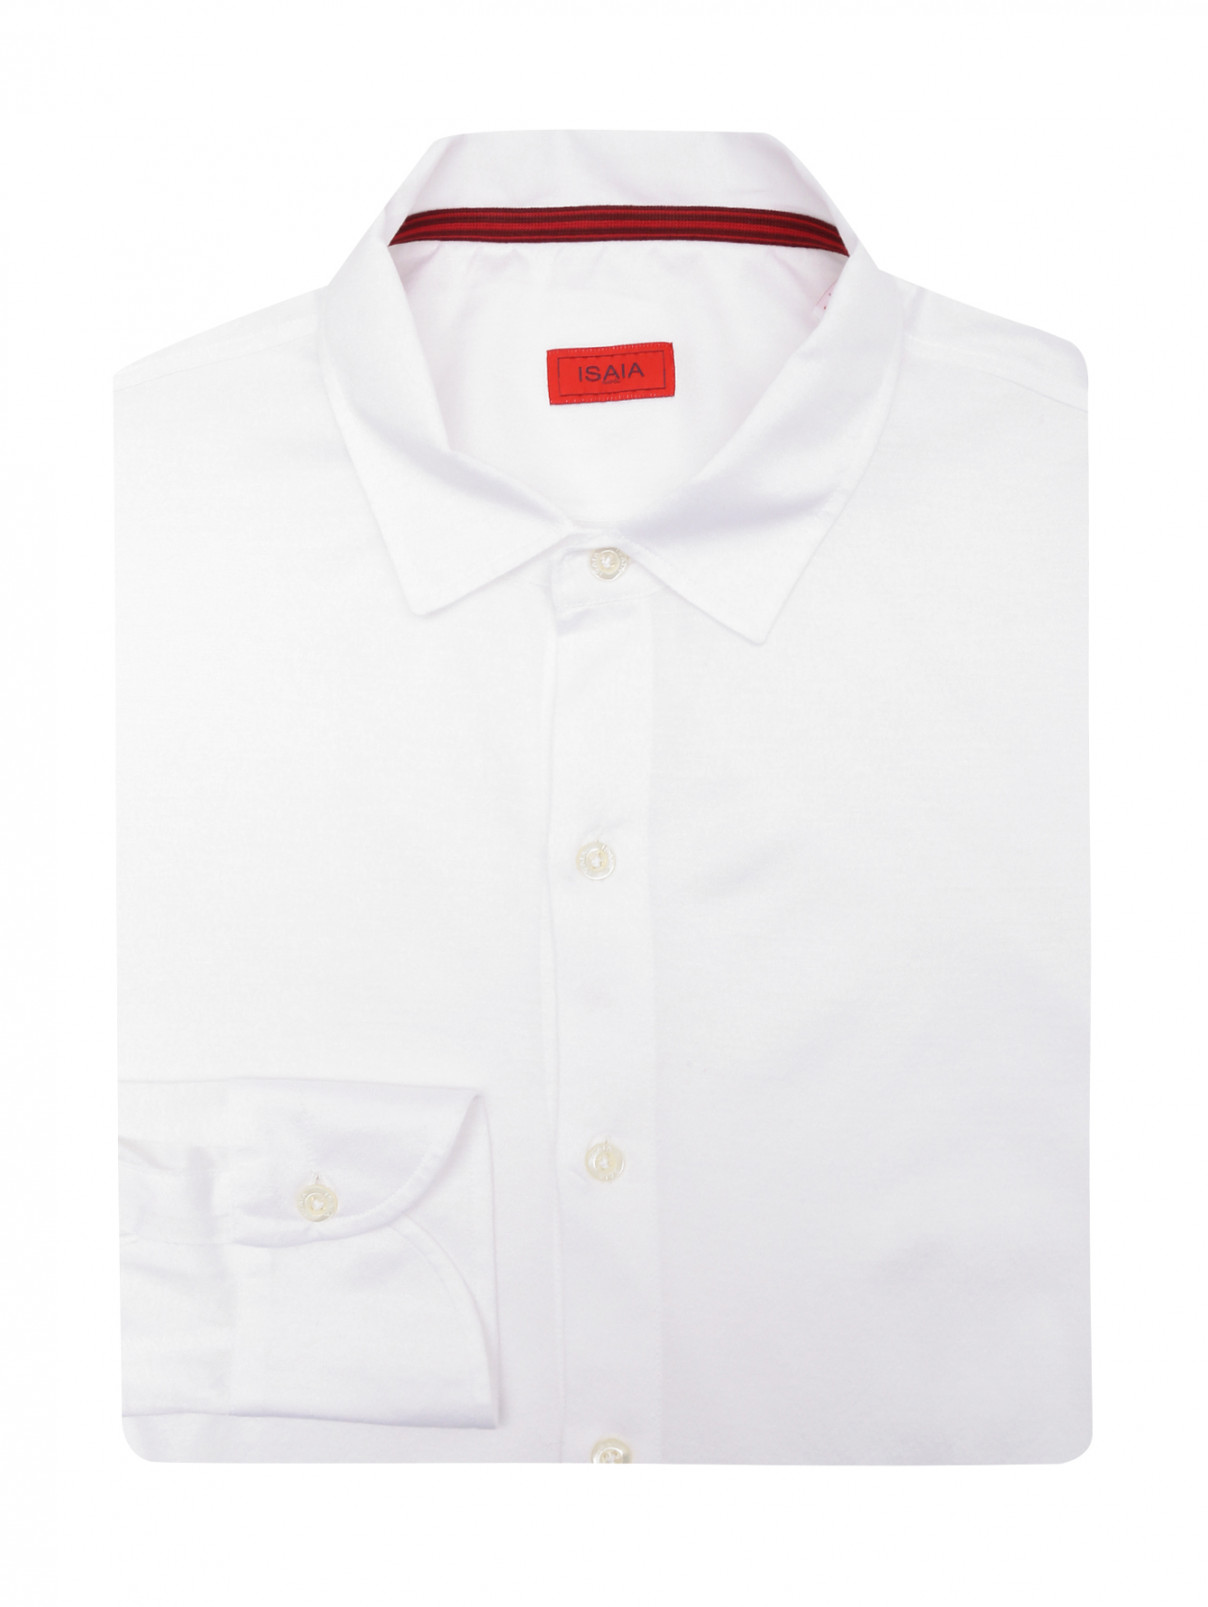 Однотонная рубашка из хлопка Isaia  –  Общий вид  – Цвет:  Белый